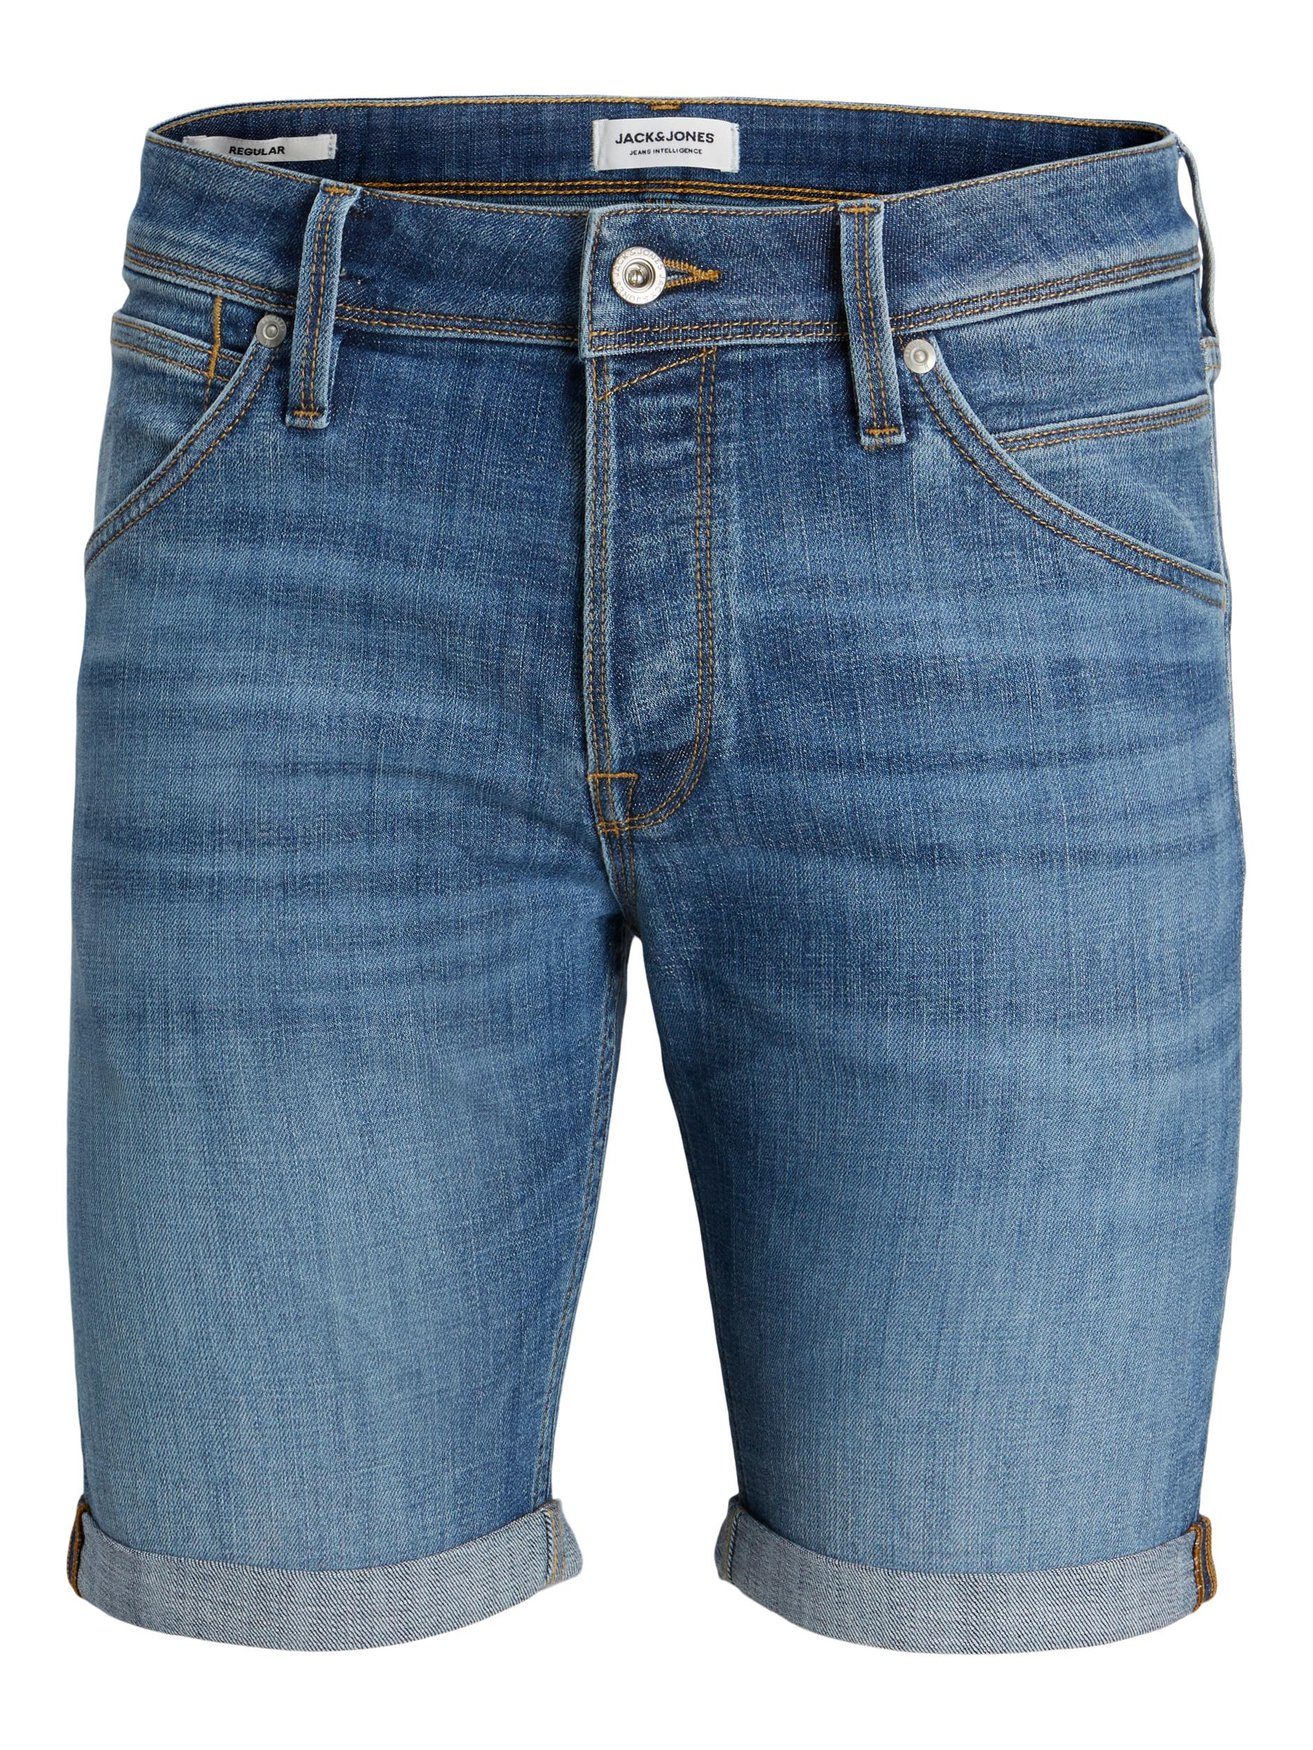 Jack & Jones Jeans Shorts Plus Blau Knielang Jeansshorts Size 6014 in JJIRICK